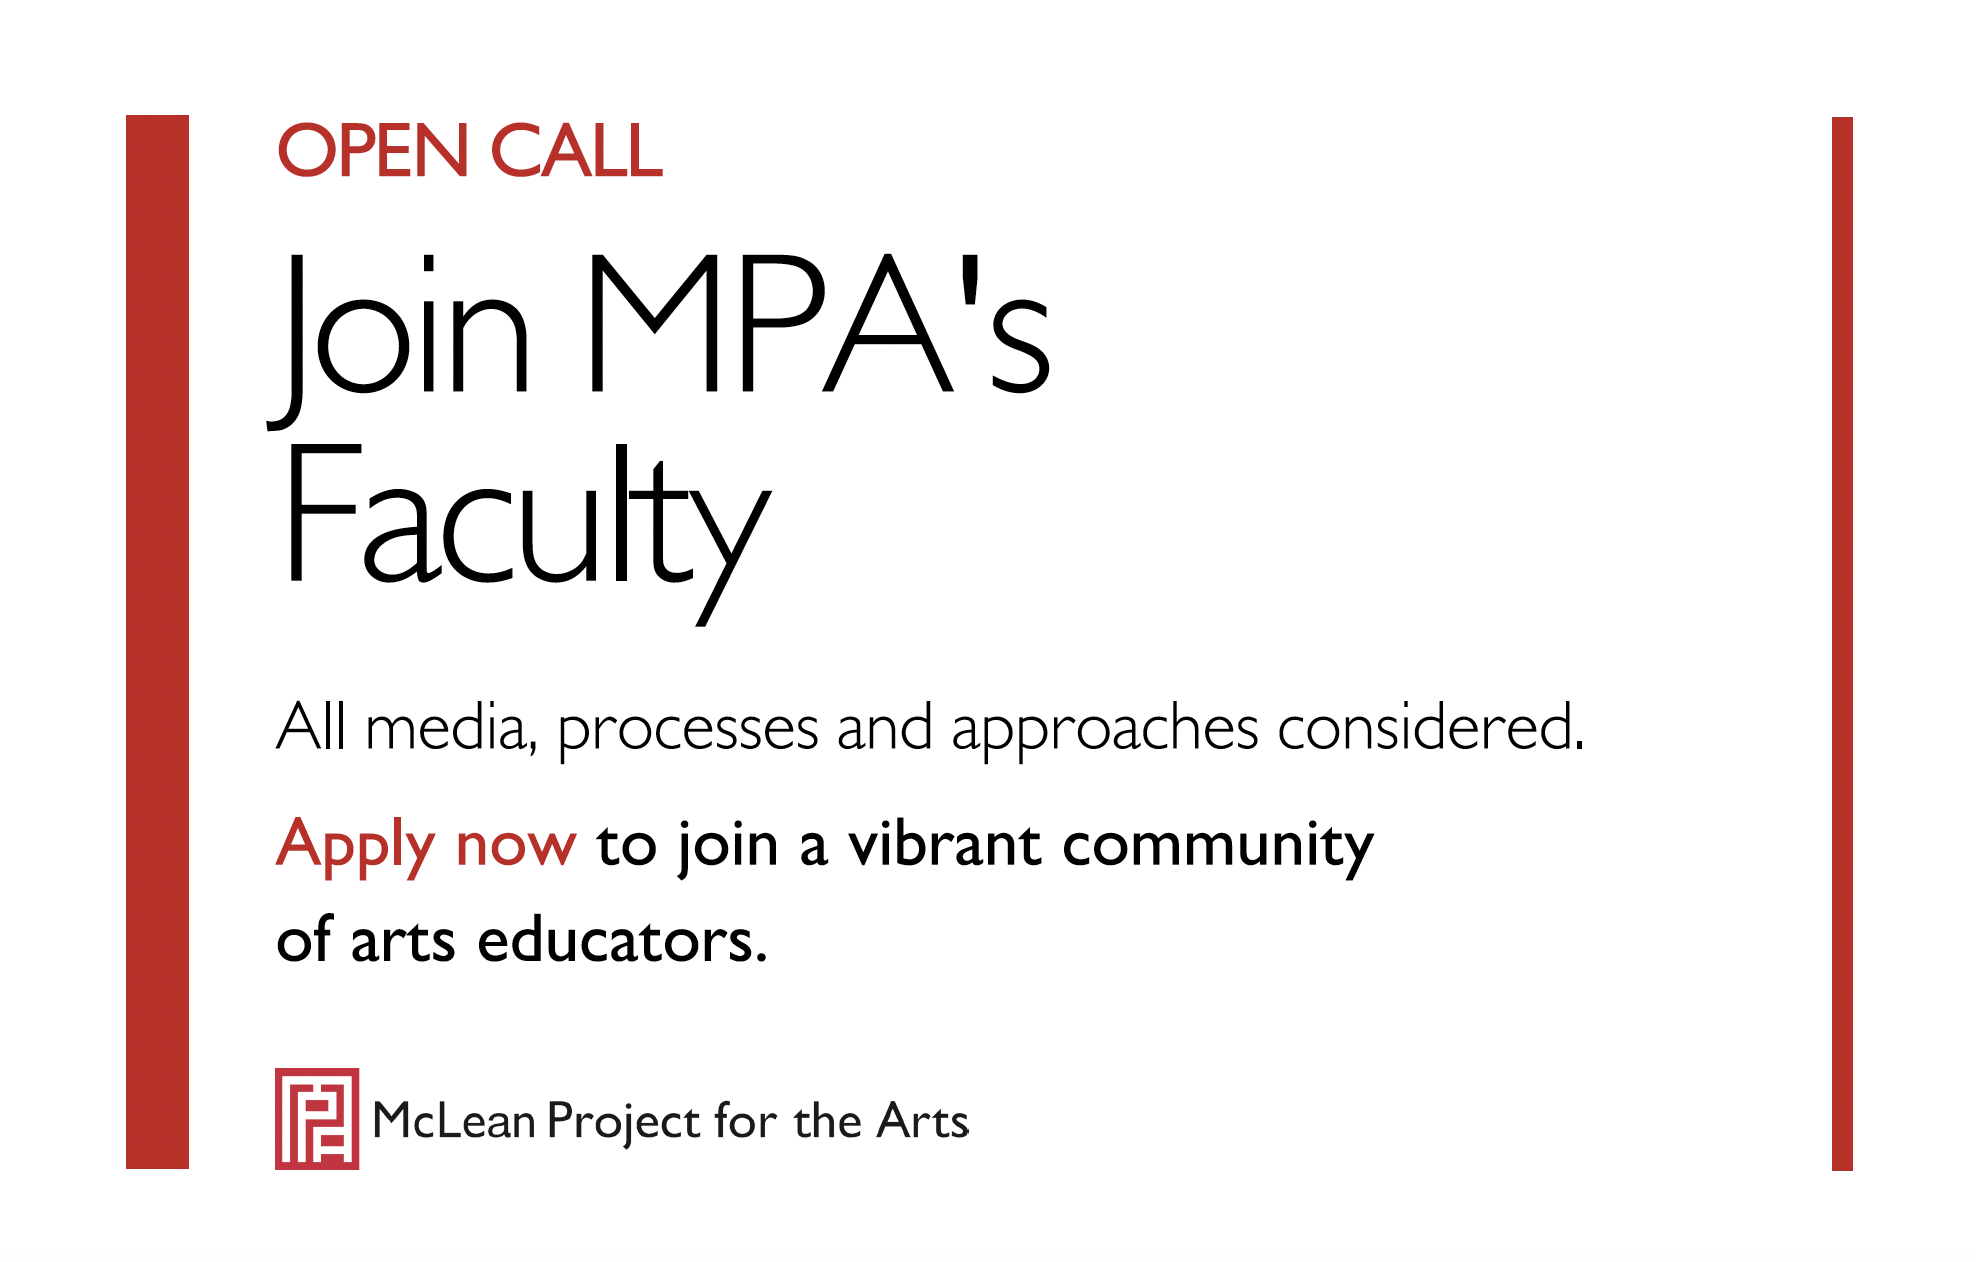 Open Call for Art Teachers